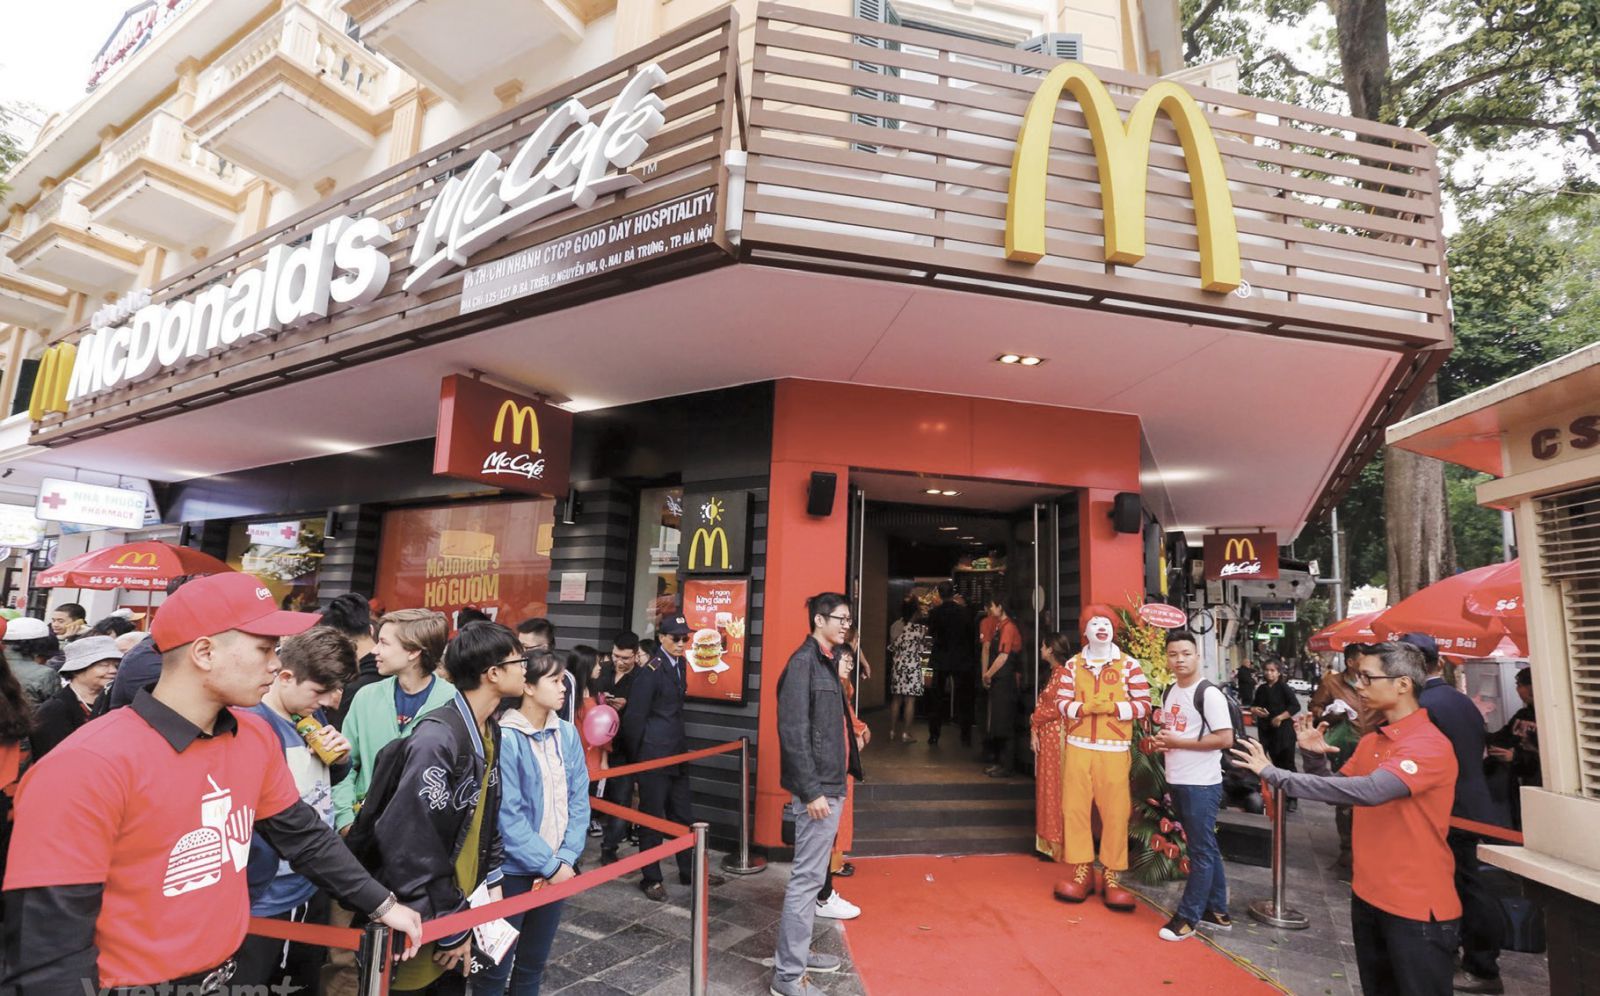 Để Cám Ơn Khách Hàng McDonalds USA Sẽ Cung Cấp Một Số Món Ăn Tiêu Biểu  Nhất Trong Một Thực Đơn Giá Trị  Cộng Đồng  Việt Báo Foundation  A